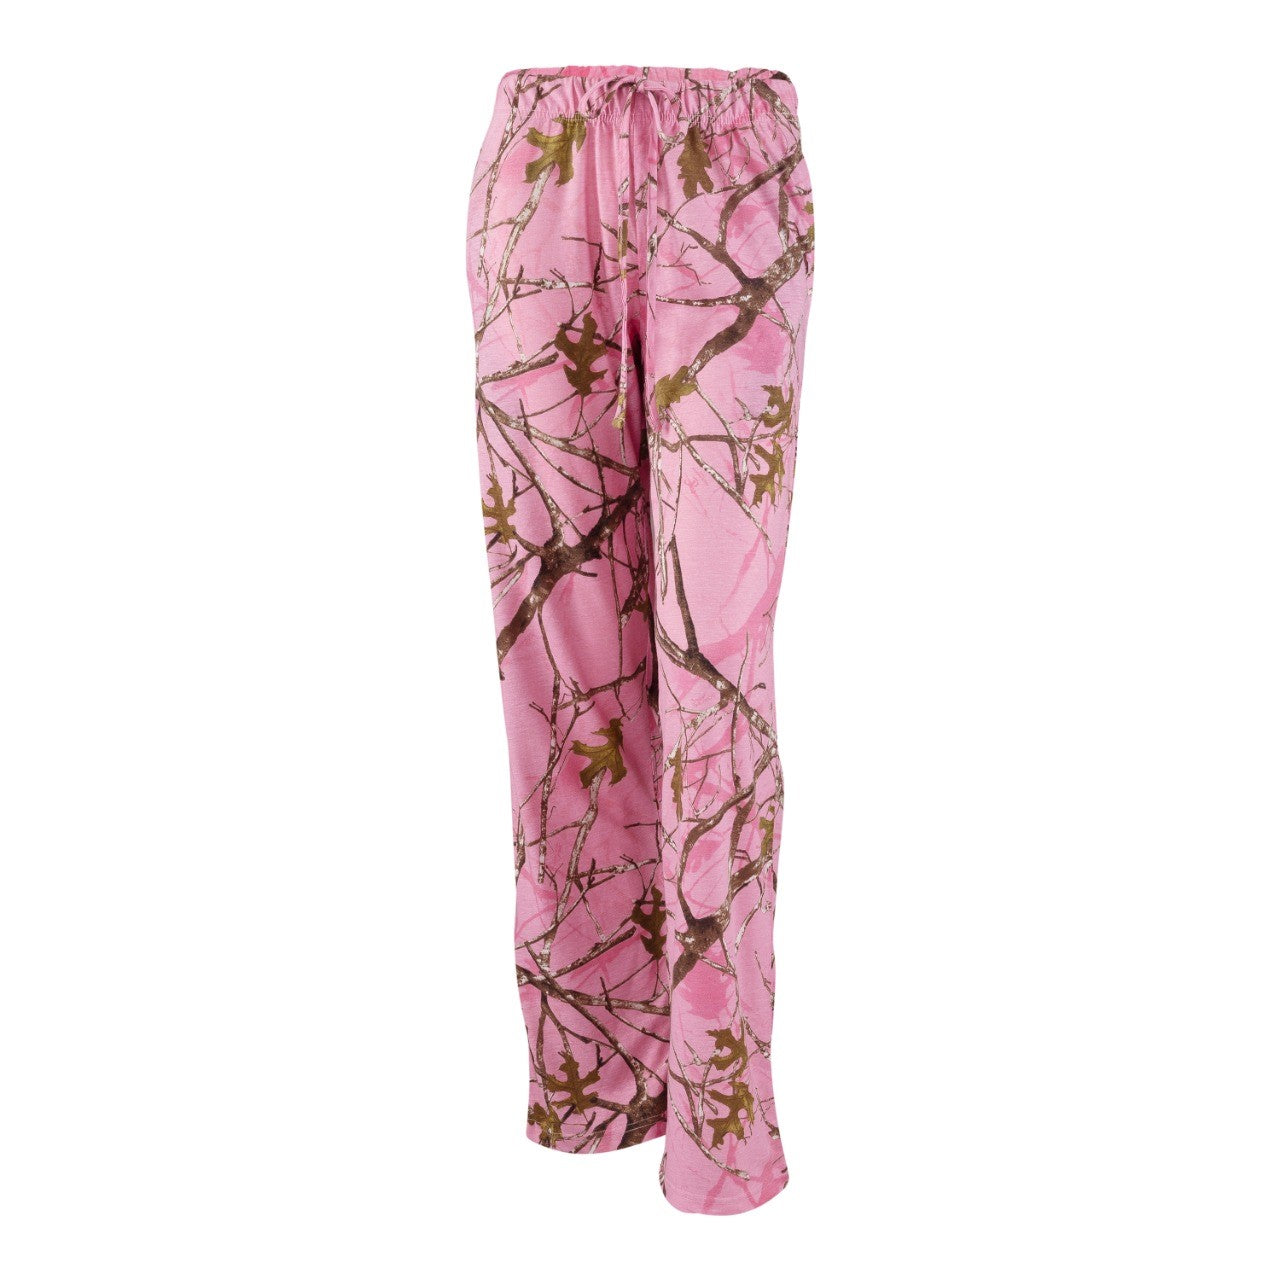 Ladies Lounge Pants in True Timber Conceal Pink Camo Print – Mooselander  Apparel